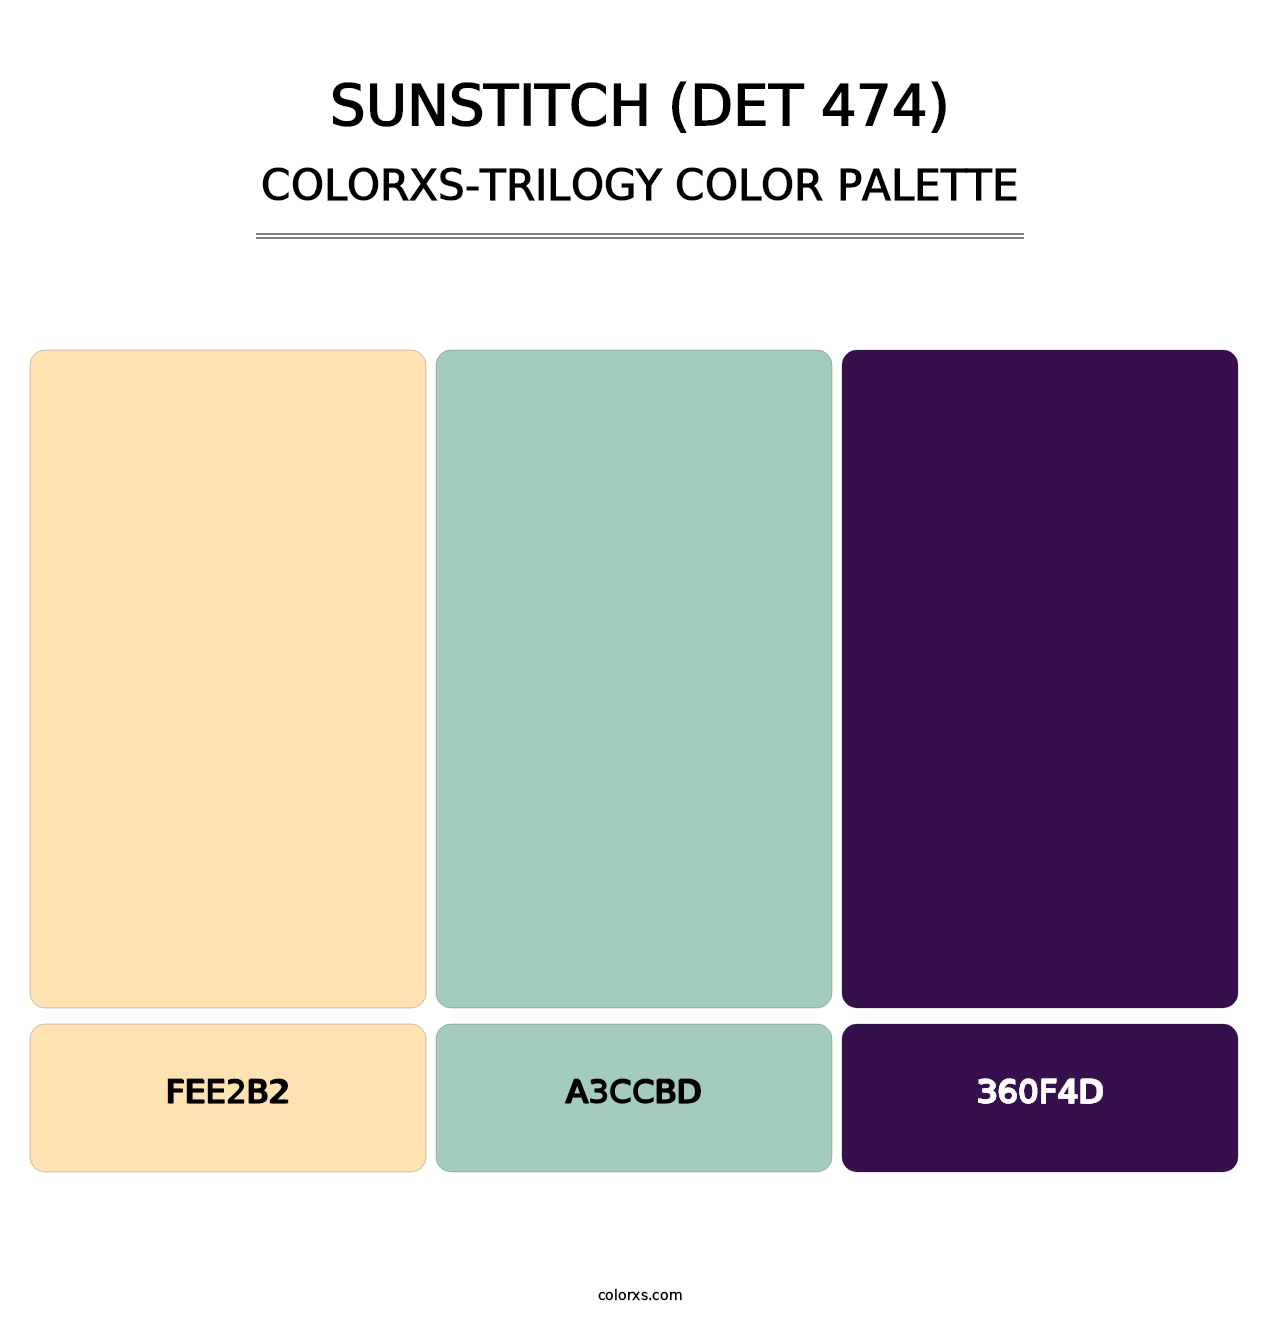 Sunstitch (DET 474) - Colorxs Trilogy Palette